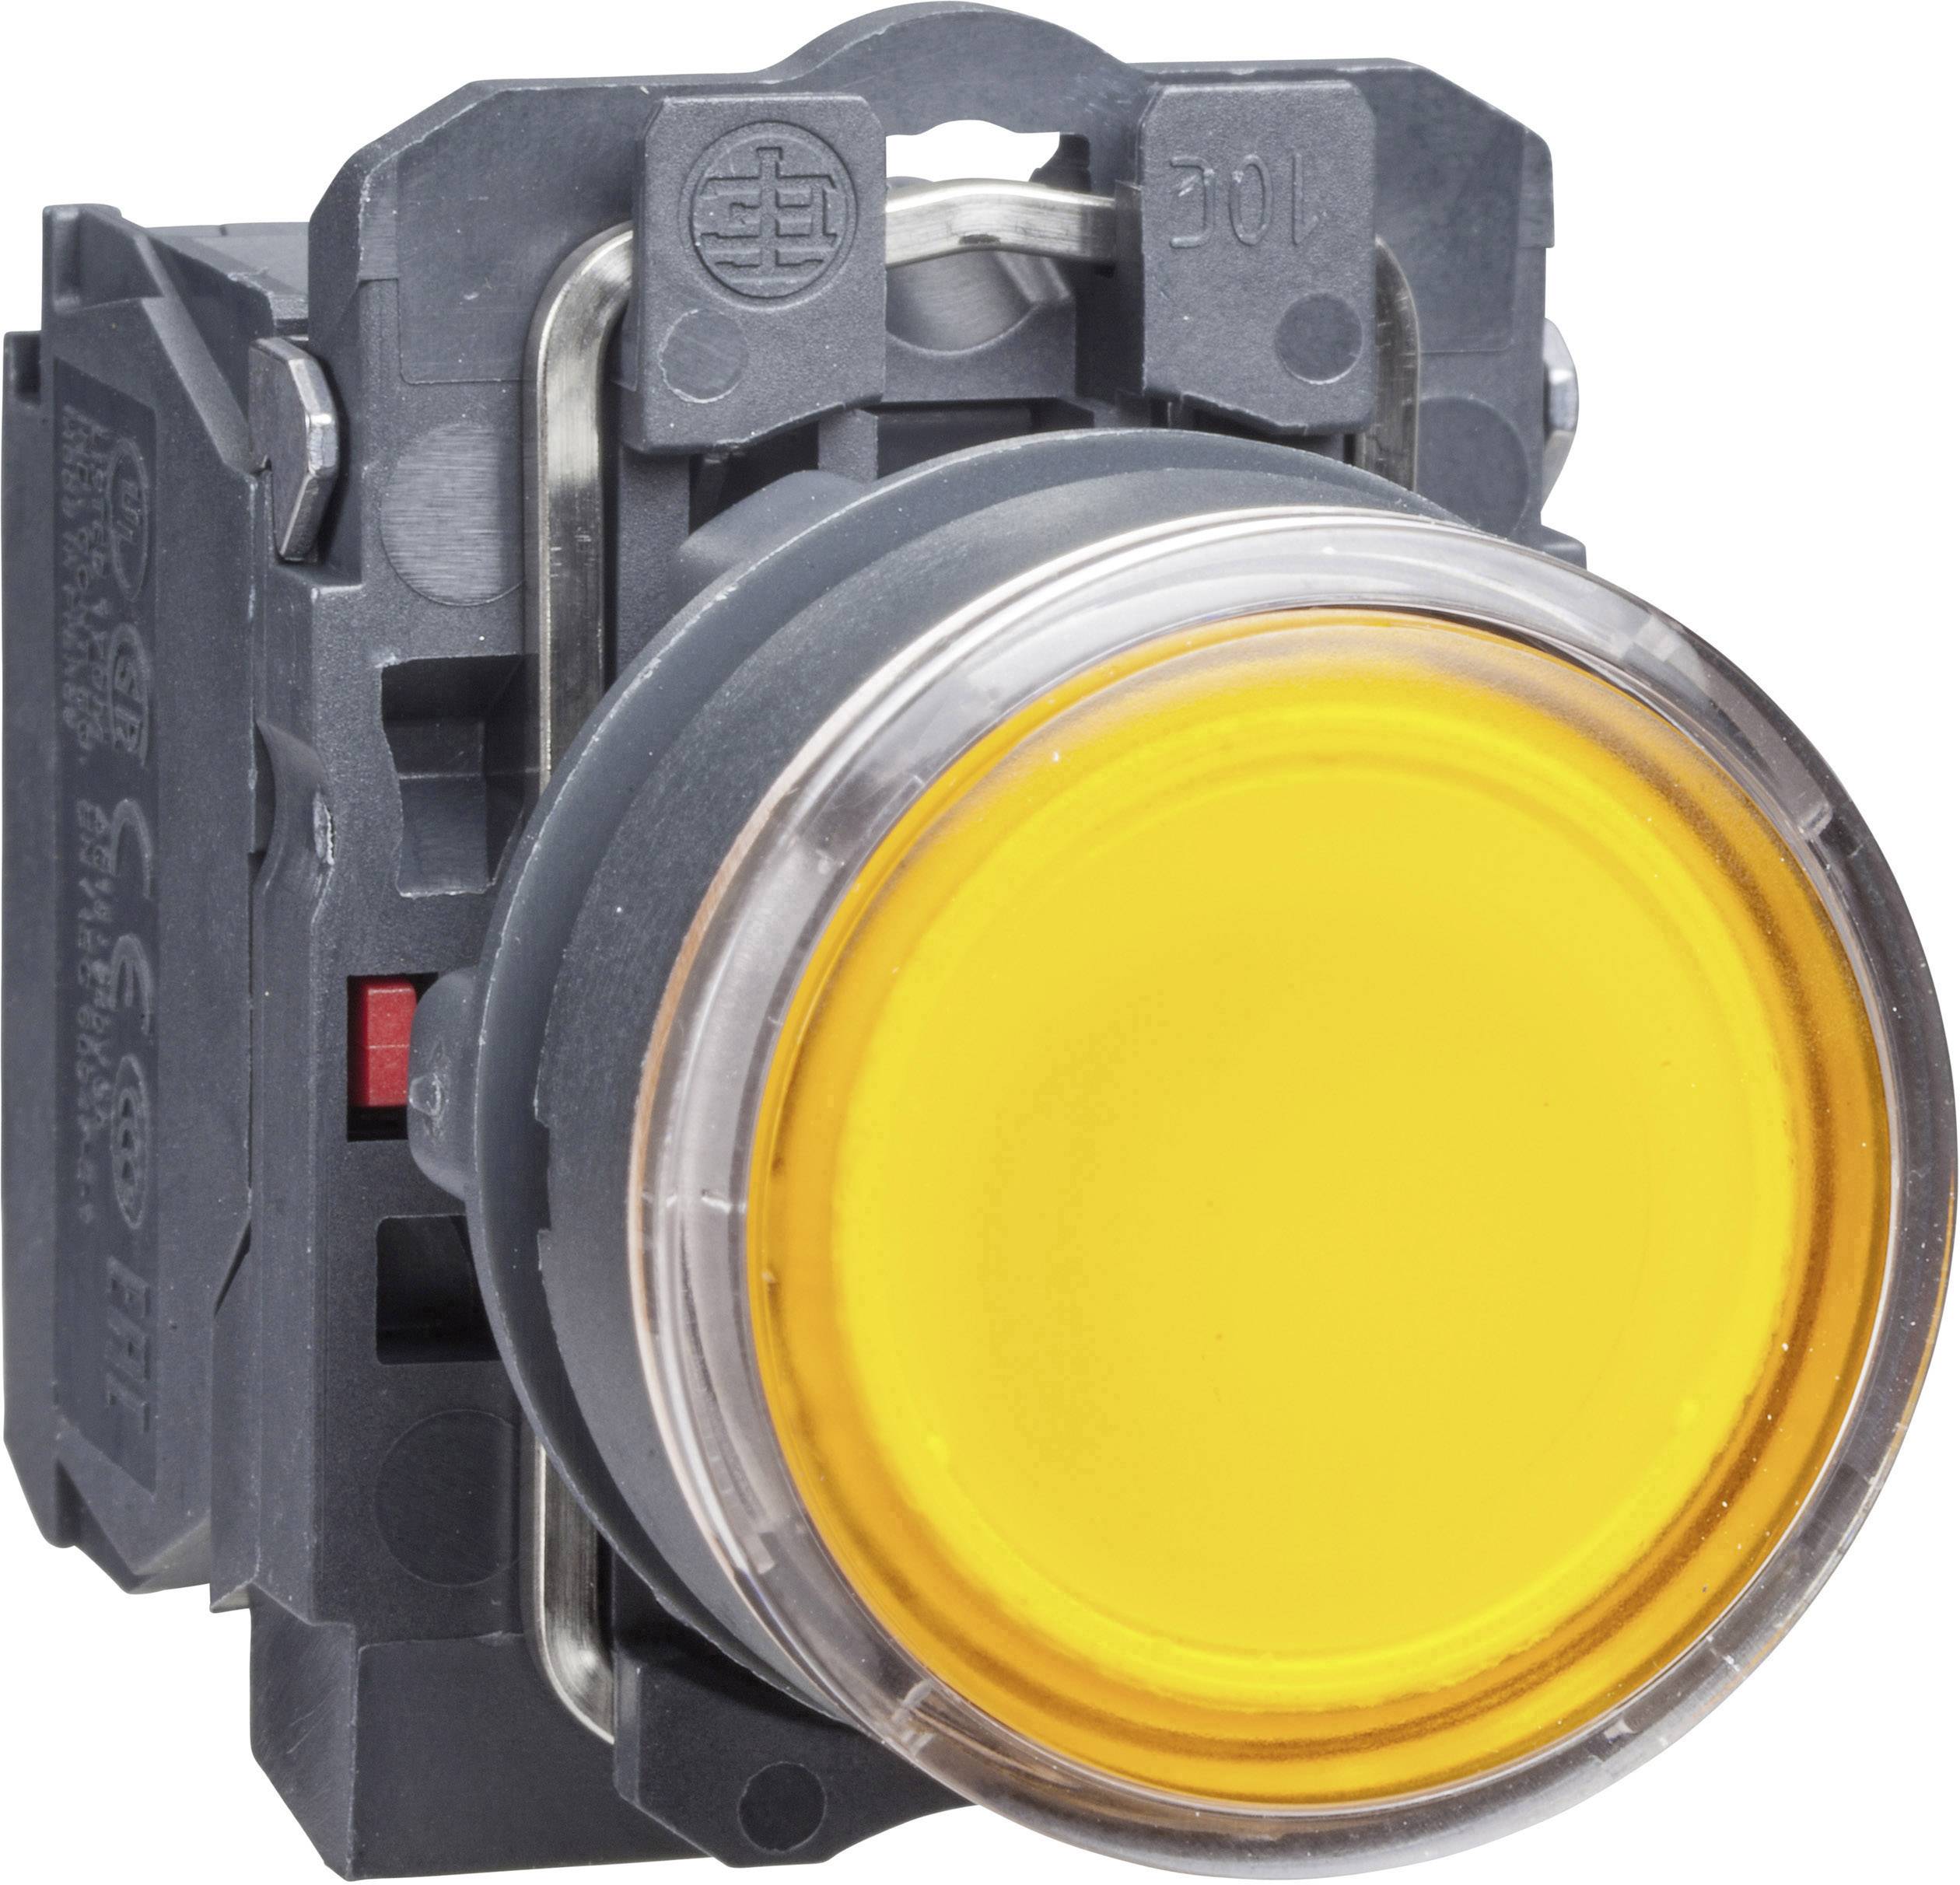 Кнопка с подсветкой 24в. Кнопка 22мм двойная с подсветкой 240в xb5aw73731m5. Pb0-aw35m5; кнопка управления с подсветкой, 1no, AC 230 В. (желтый). Xb7nd21 жёлтая кнопка. Кнопка жёлтая с возвратом 1но xb7na21.